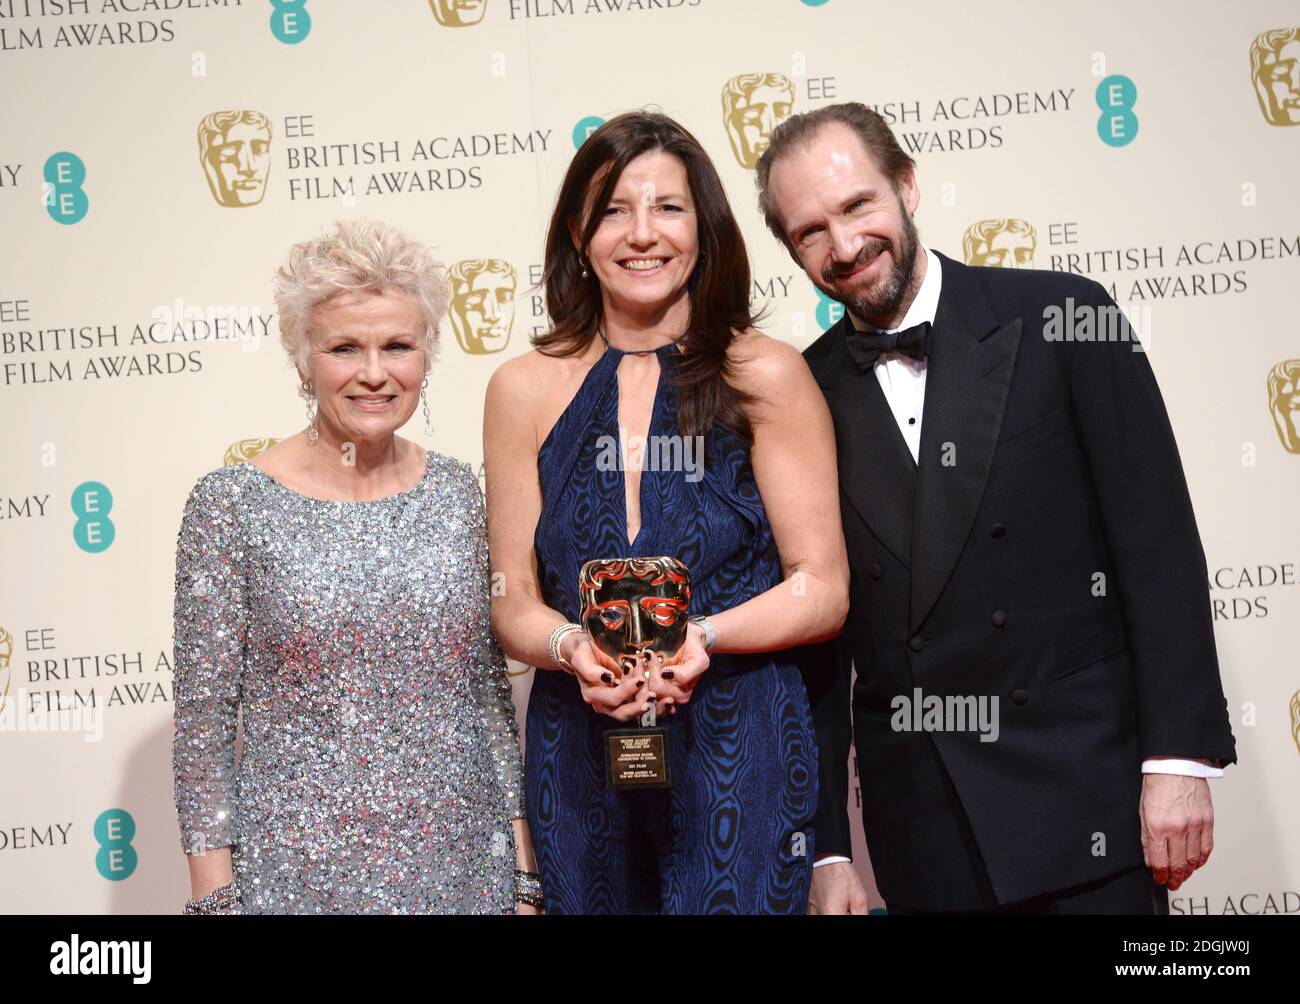 Die britische Produzentin Christine Langan (C) von der BBC posiert mit dem herausragenden britischen Contribution to Cinema Award mit den Moderatoren Ralph Fiennes und Julie Walters im Presseraum der EE British Academy Film Awards 2015 im Royal Opera House in Covent Garden, London. Stockfoto